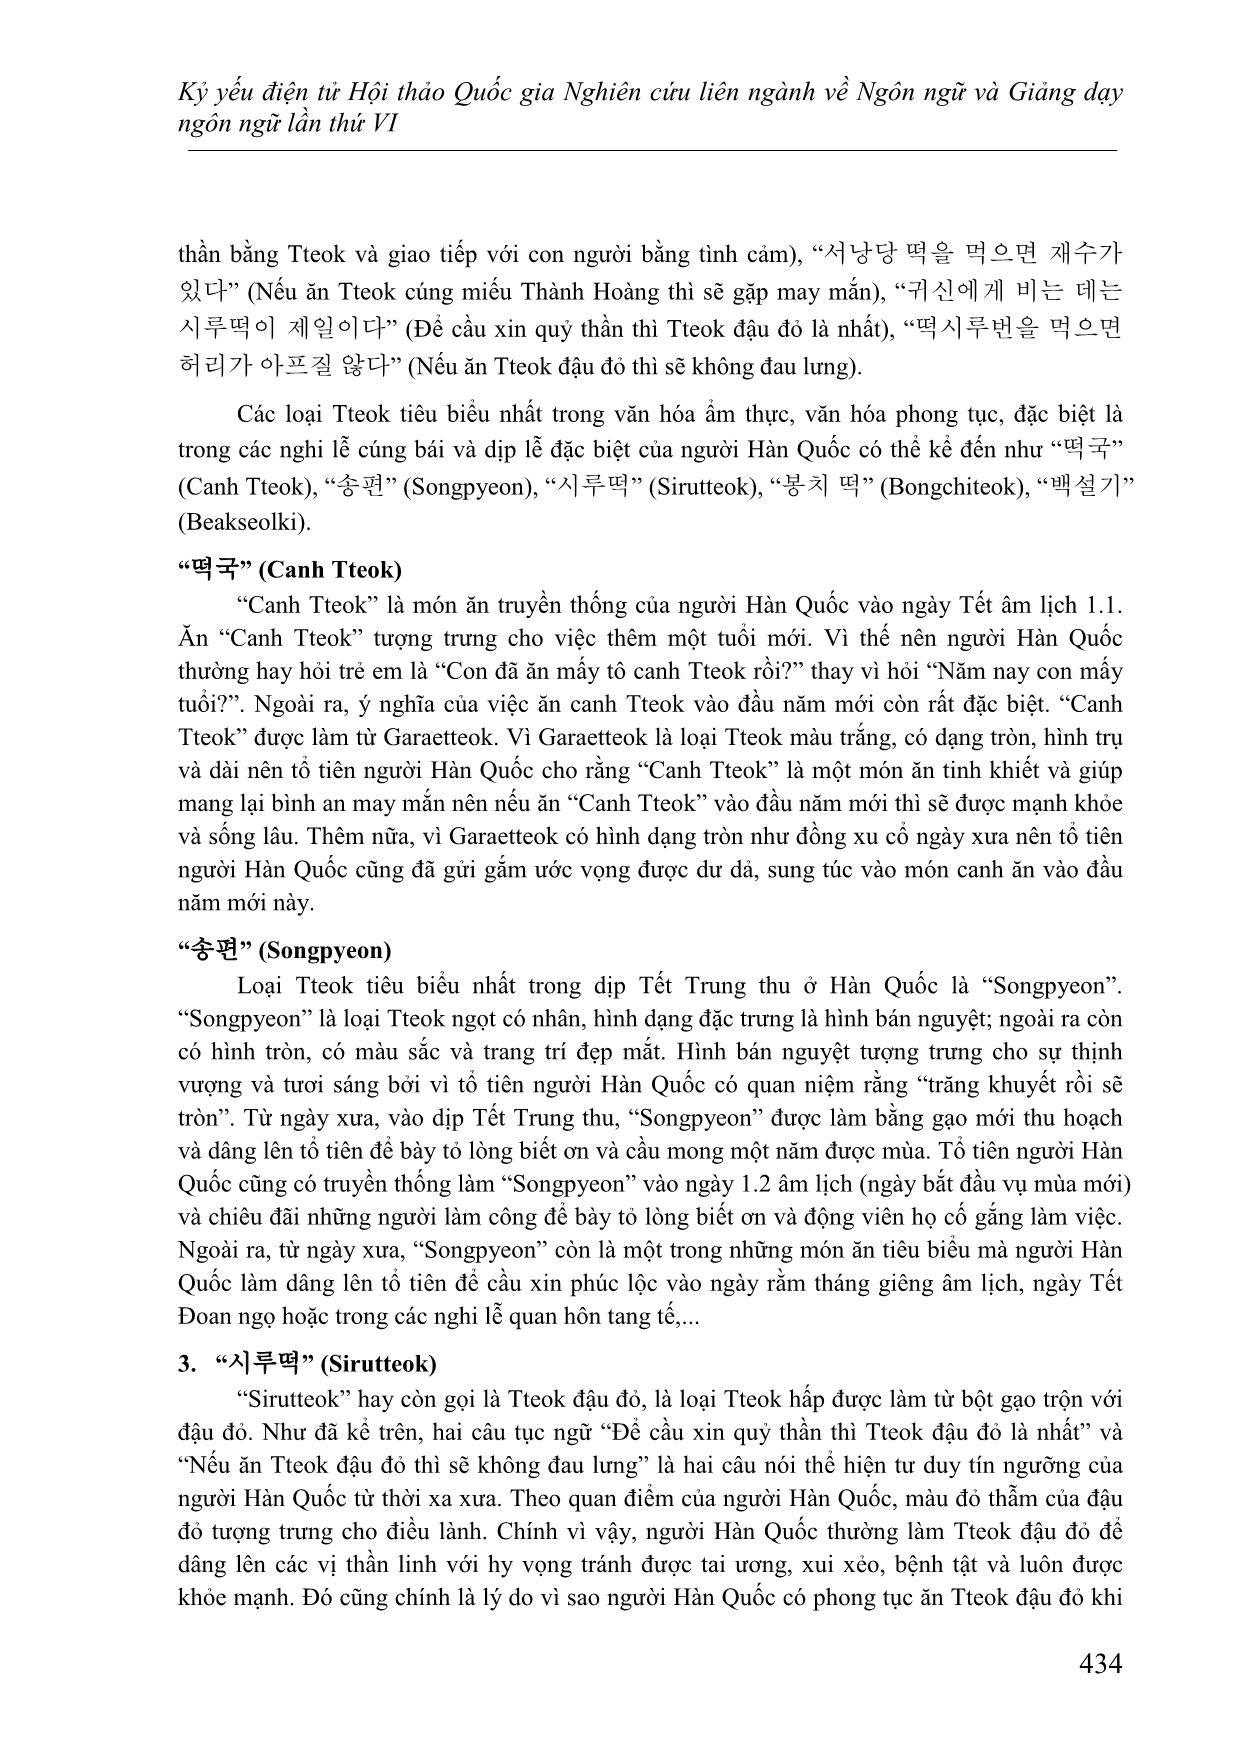 Đặc điểm ngôn ngữ và văn hóa Hàn Quốc được biểu hiện qua yếu tố “tteok” trong quán dụng ngữ và tục ngữ tiếng Hàn trang 9